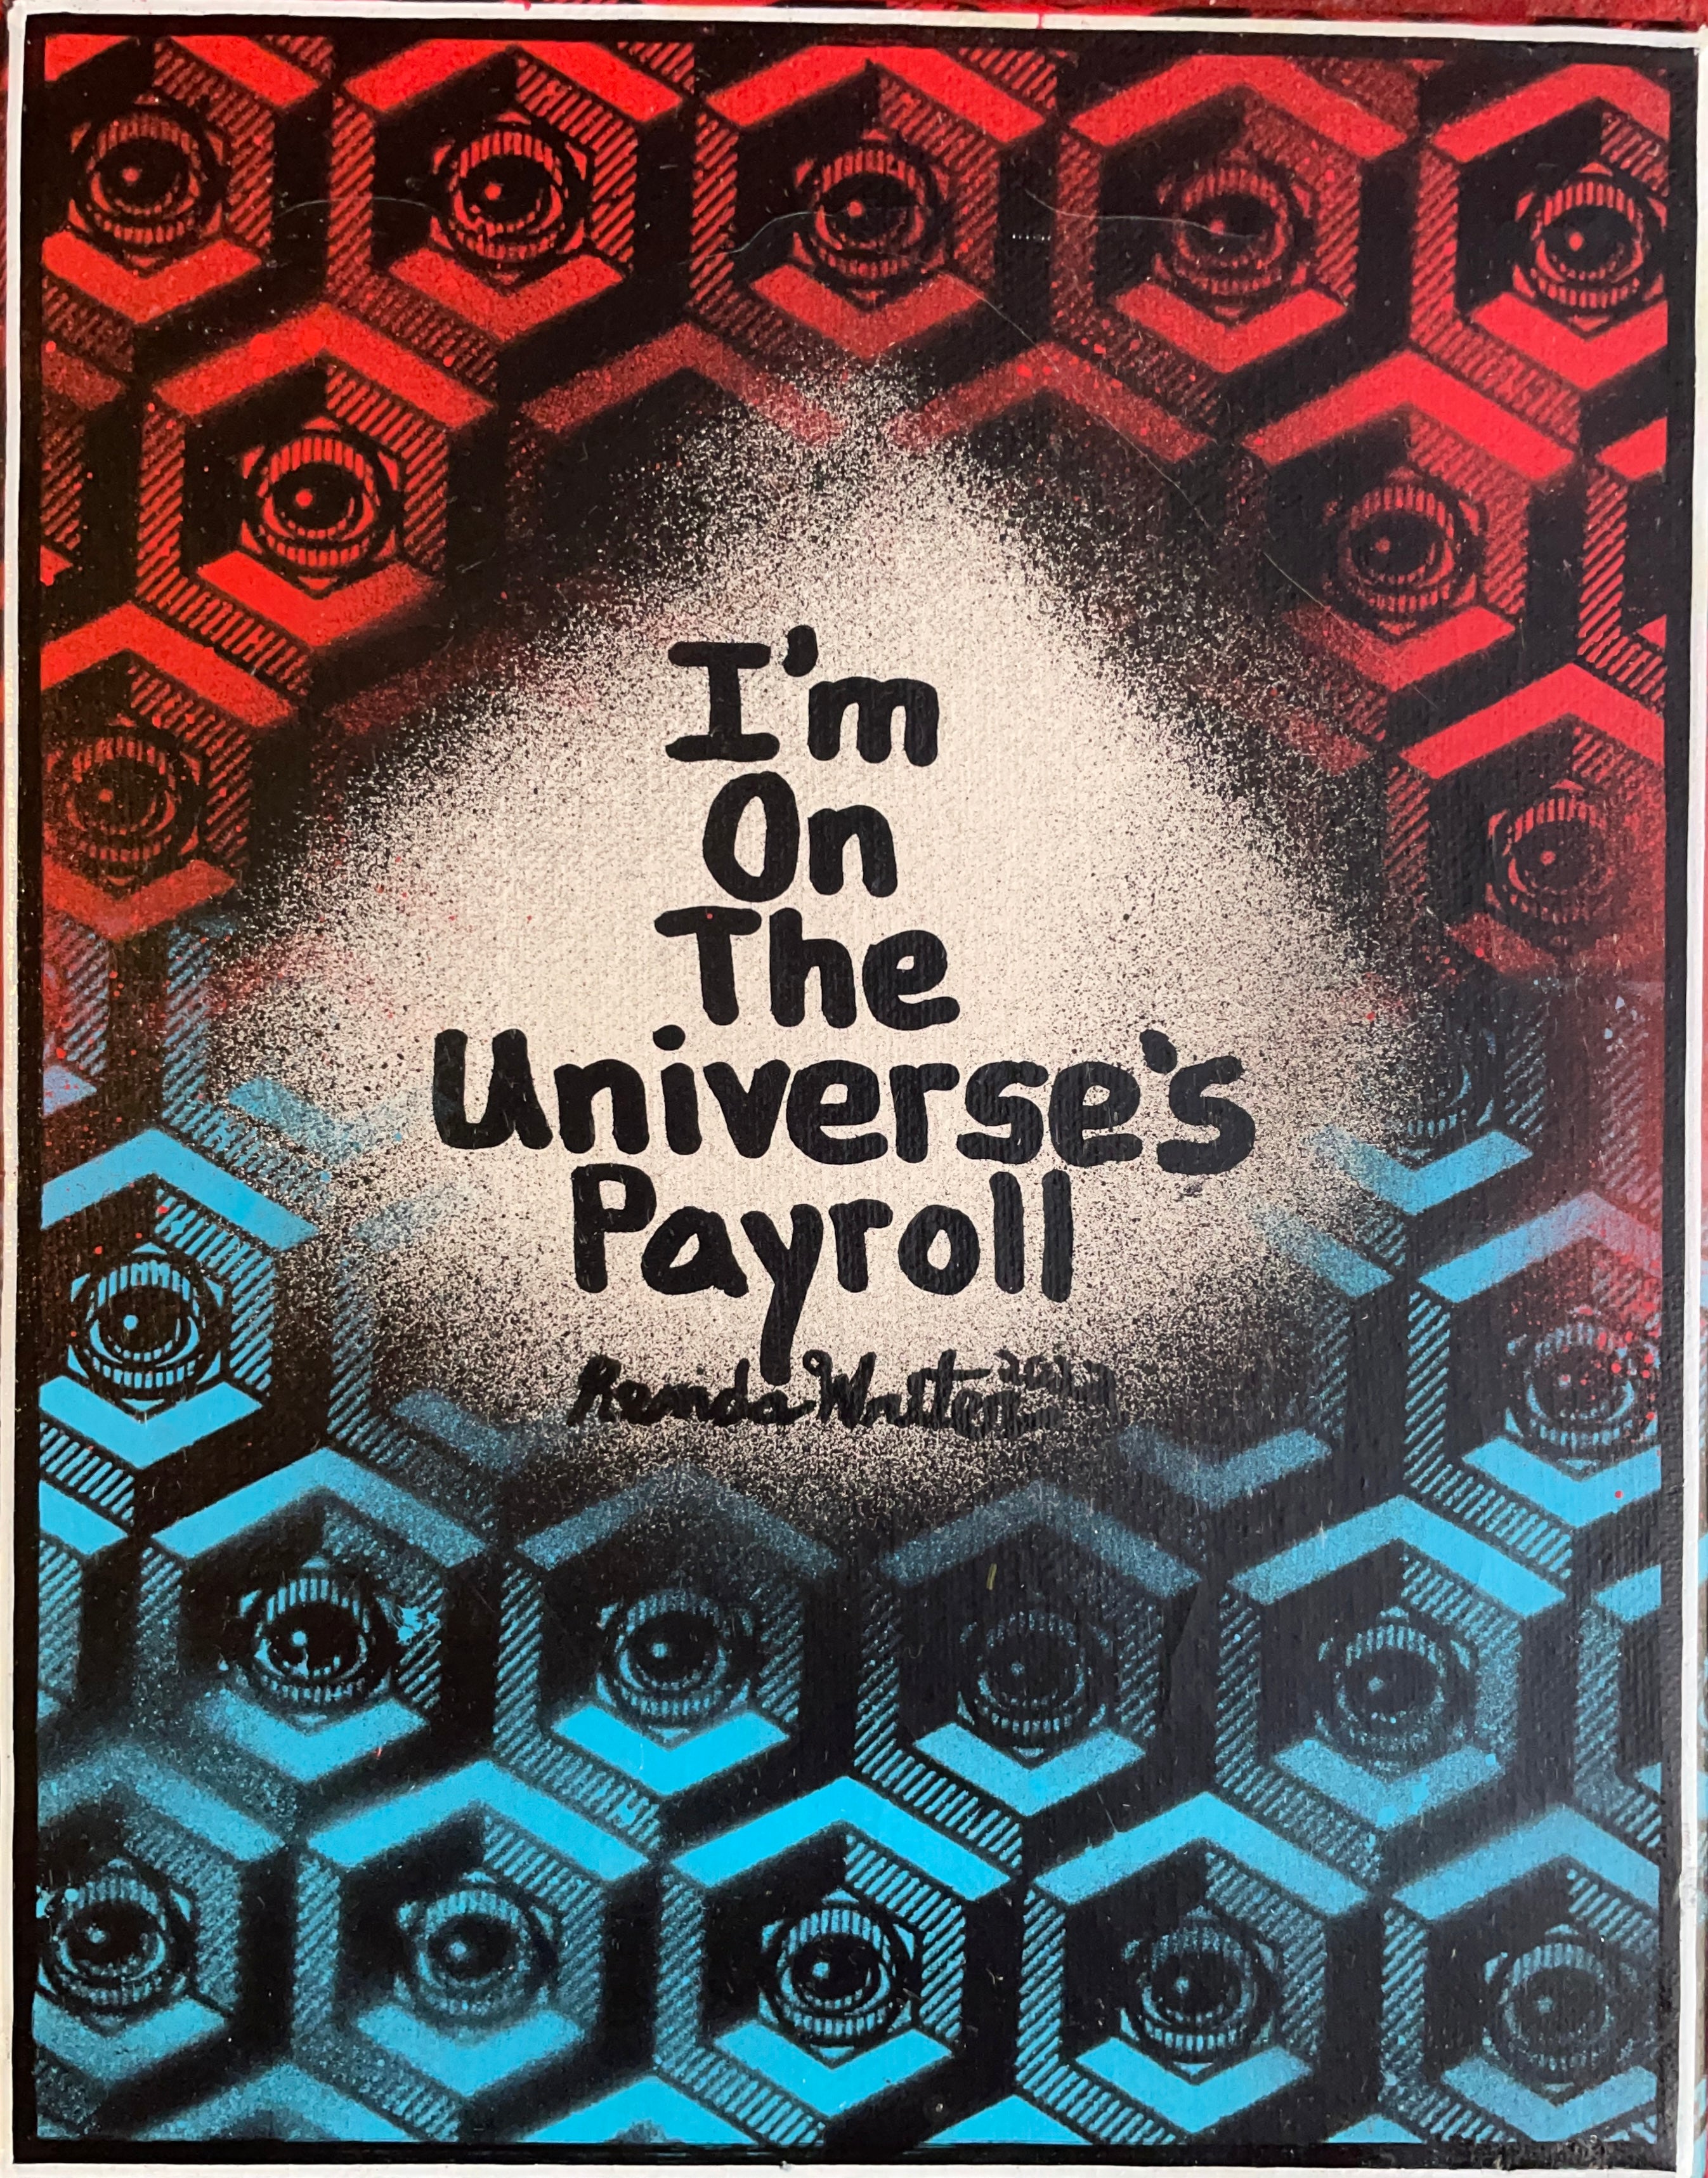 Renda Writer “Eye’m on the Universes Payroll” Universe” @EYEZ C👁LLAB👁RATE Painting Pattern